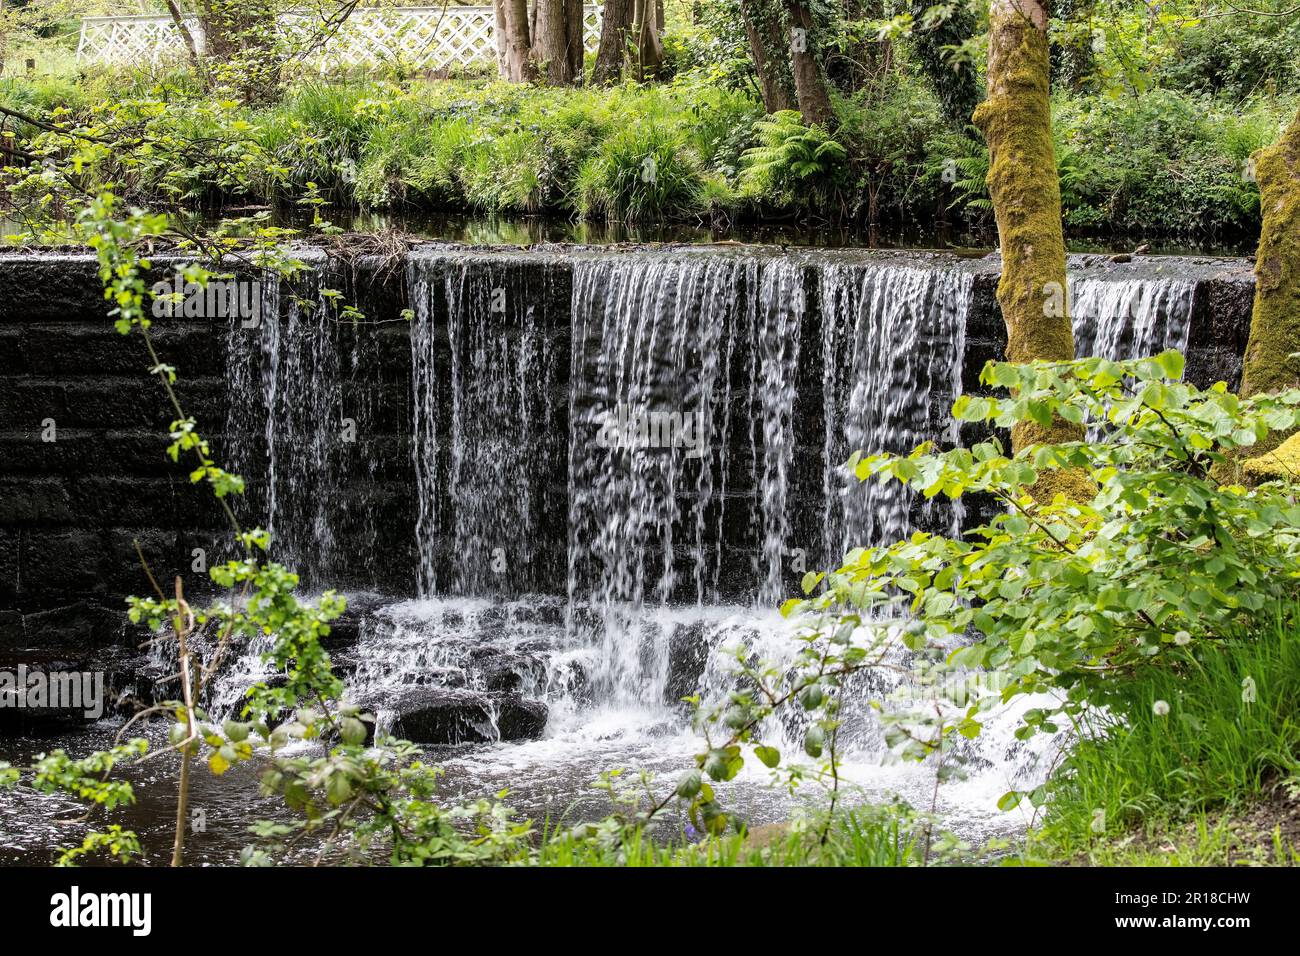 Ein kleiner Wasserfall auf dem Fluss Holme in West Yorkshire in Magdale bietet im Frühling eine malerische Szene, während das neue Laub das Wasser umgibt Stockfoto